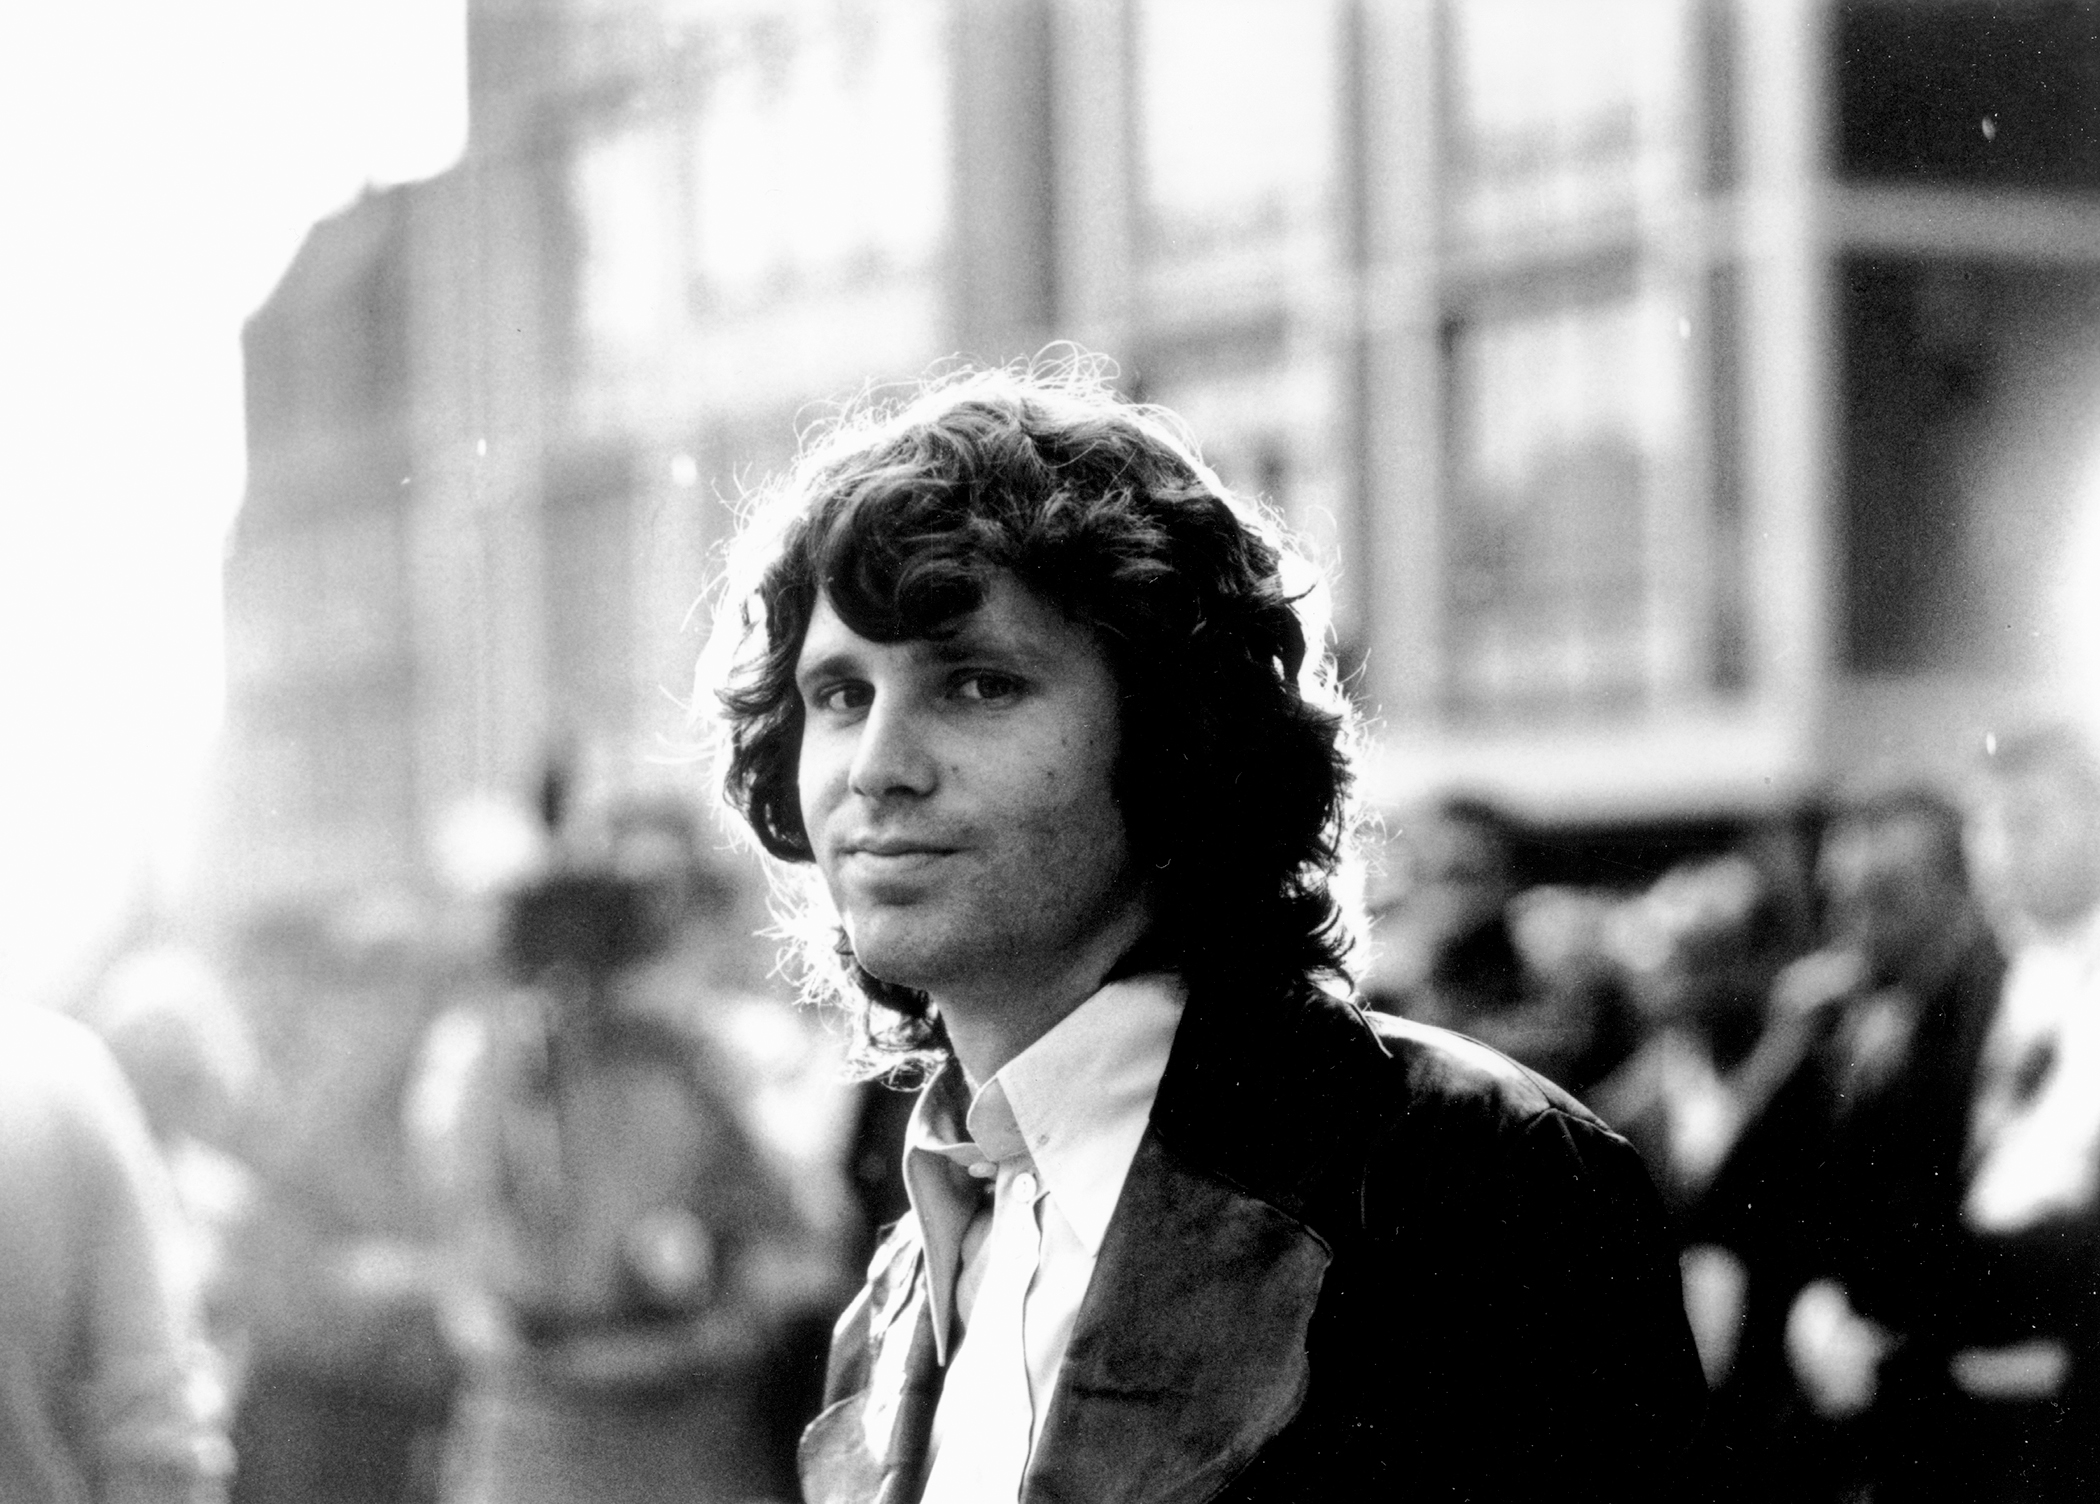 Jim Morrison, circa 1970